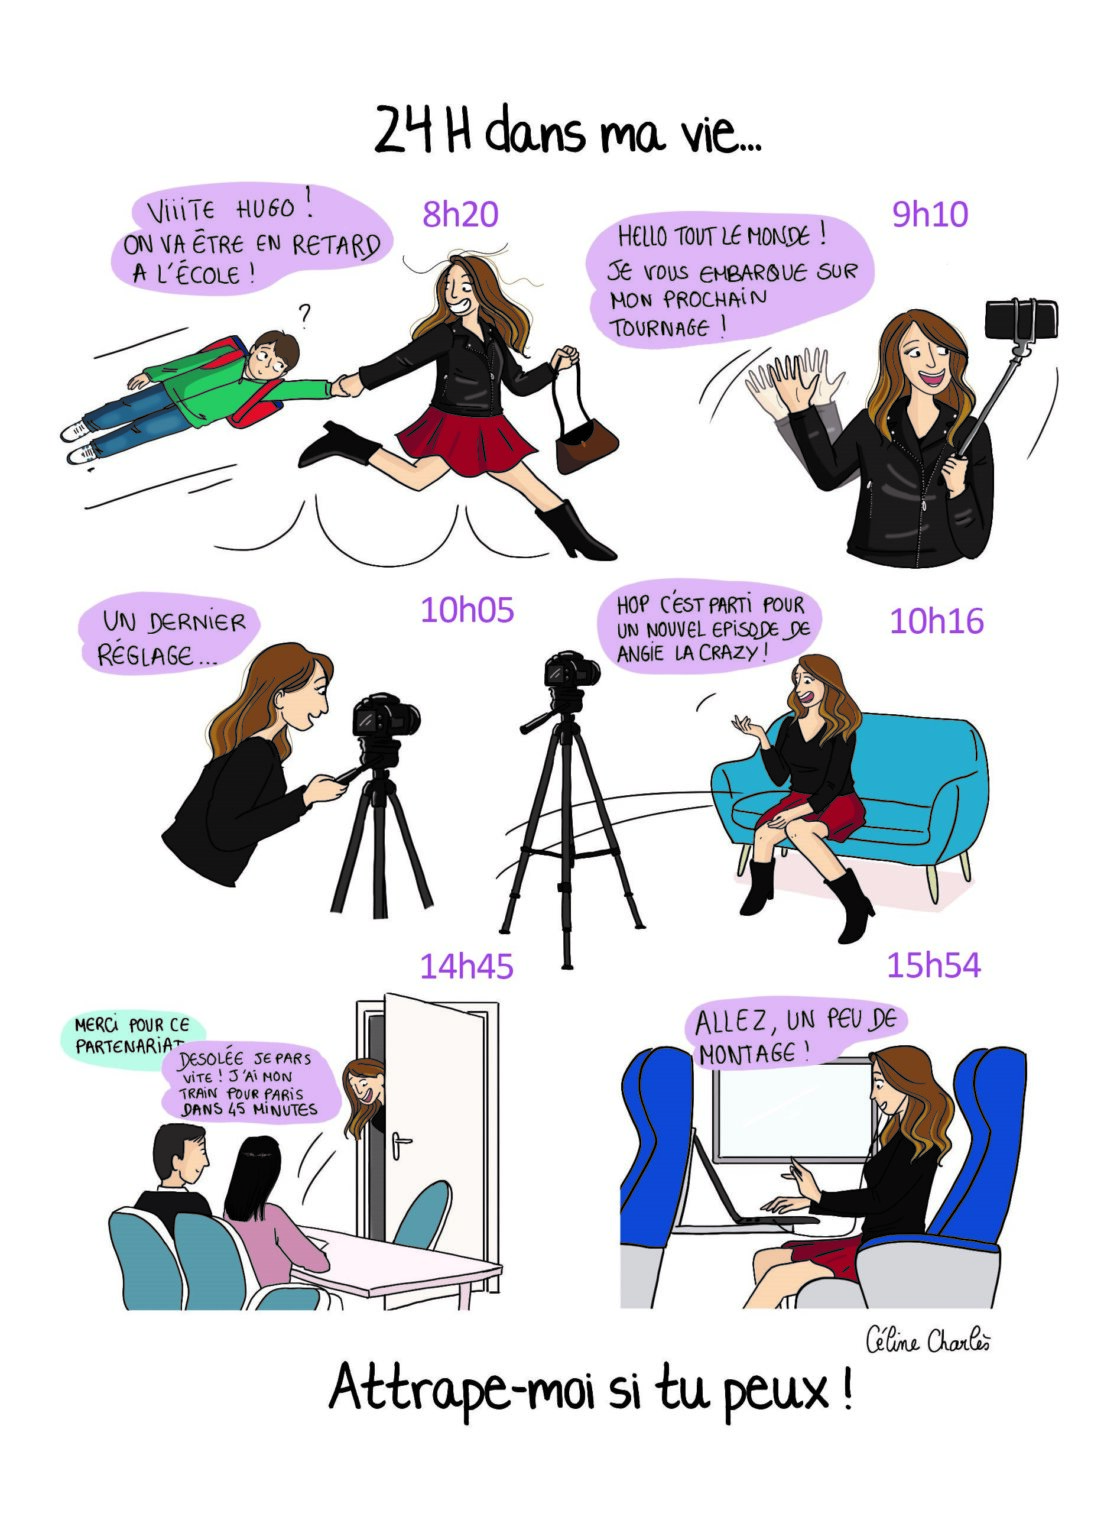 illustration extraite du livre "Comment je suis devenue youtubeuse" d'Angélique Grimberg